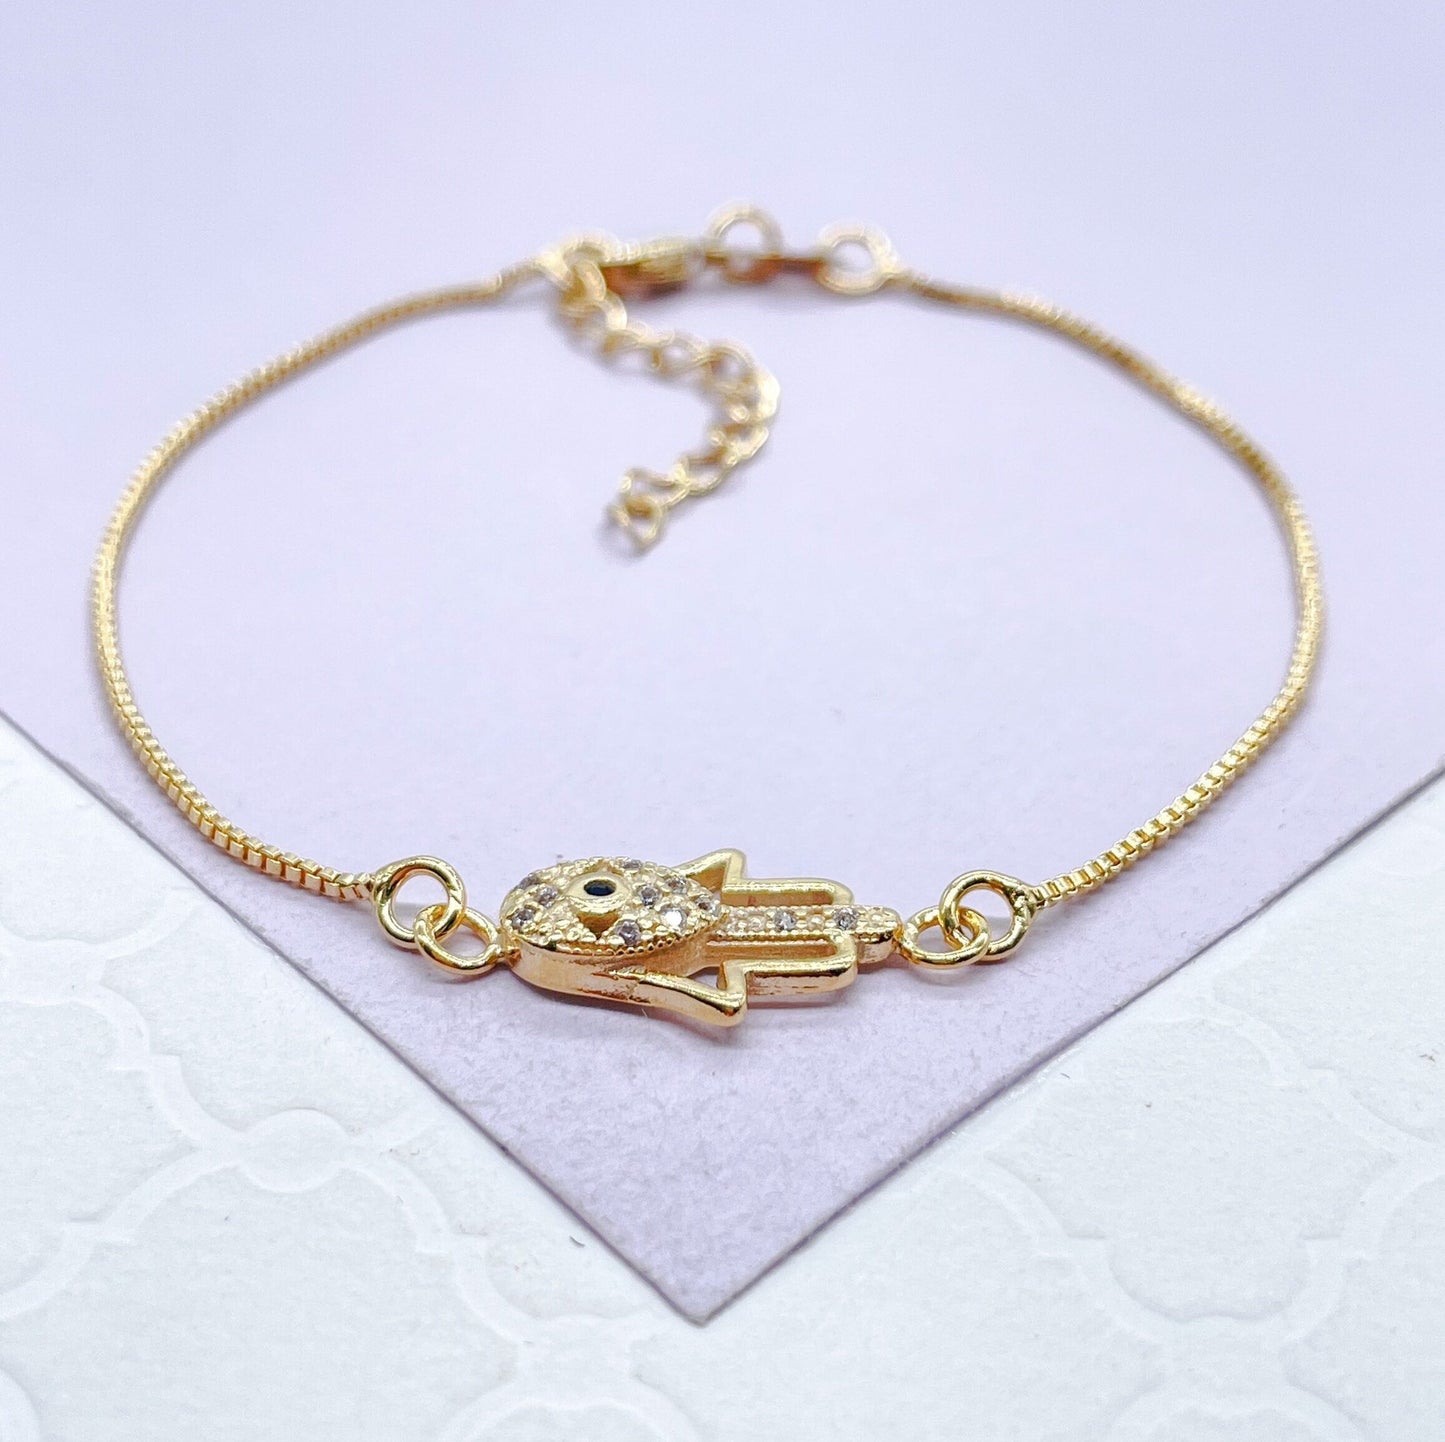 18k Gold Filled Dainty Box Chain Bracelet with CZ Hamza Hand Charm